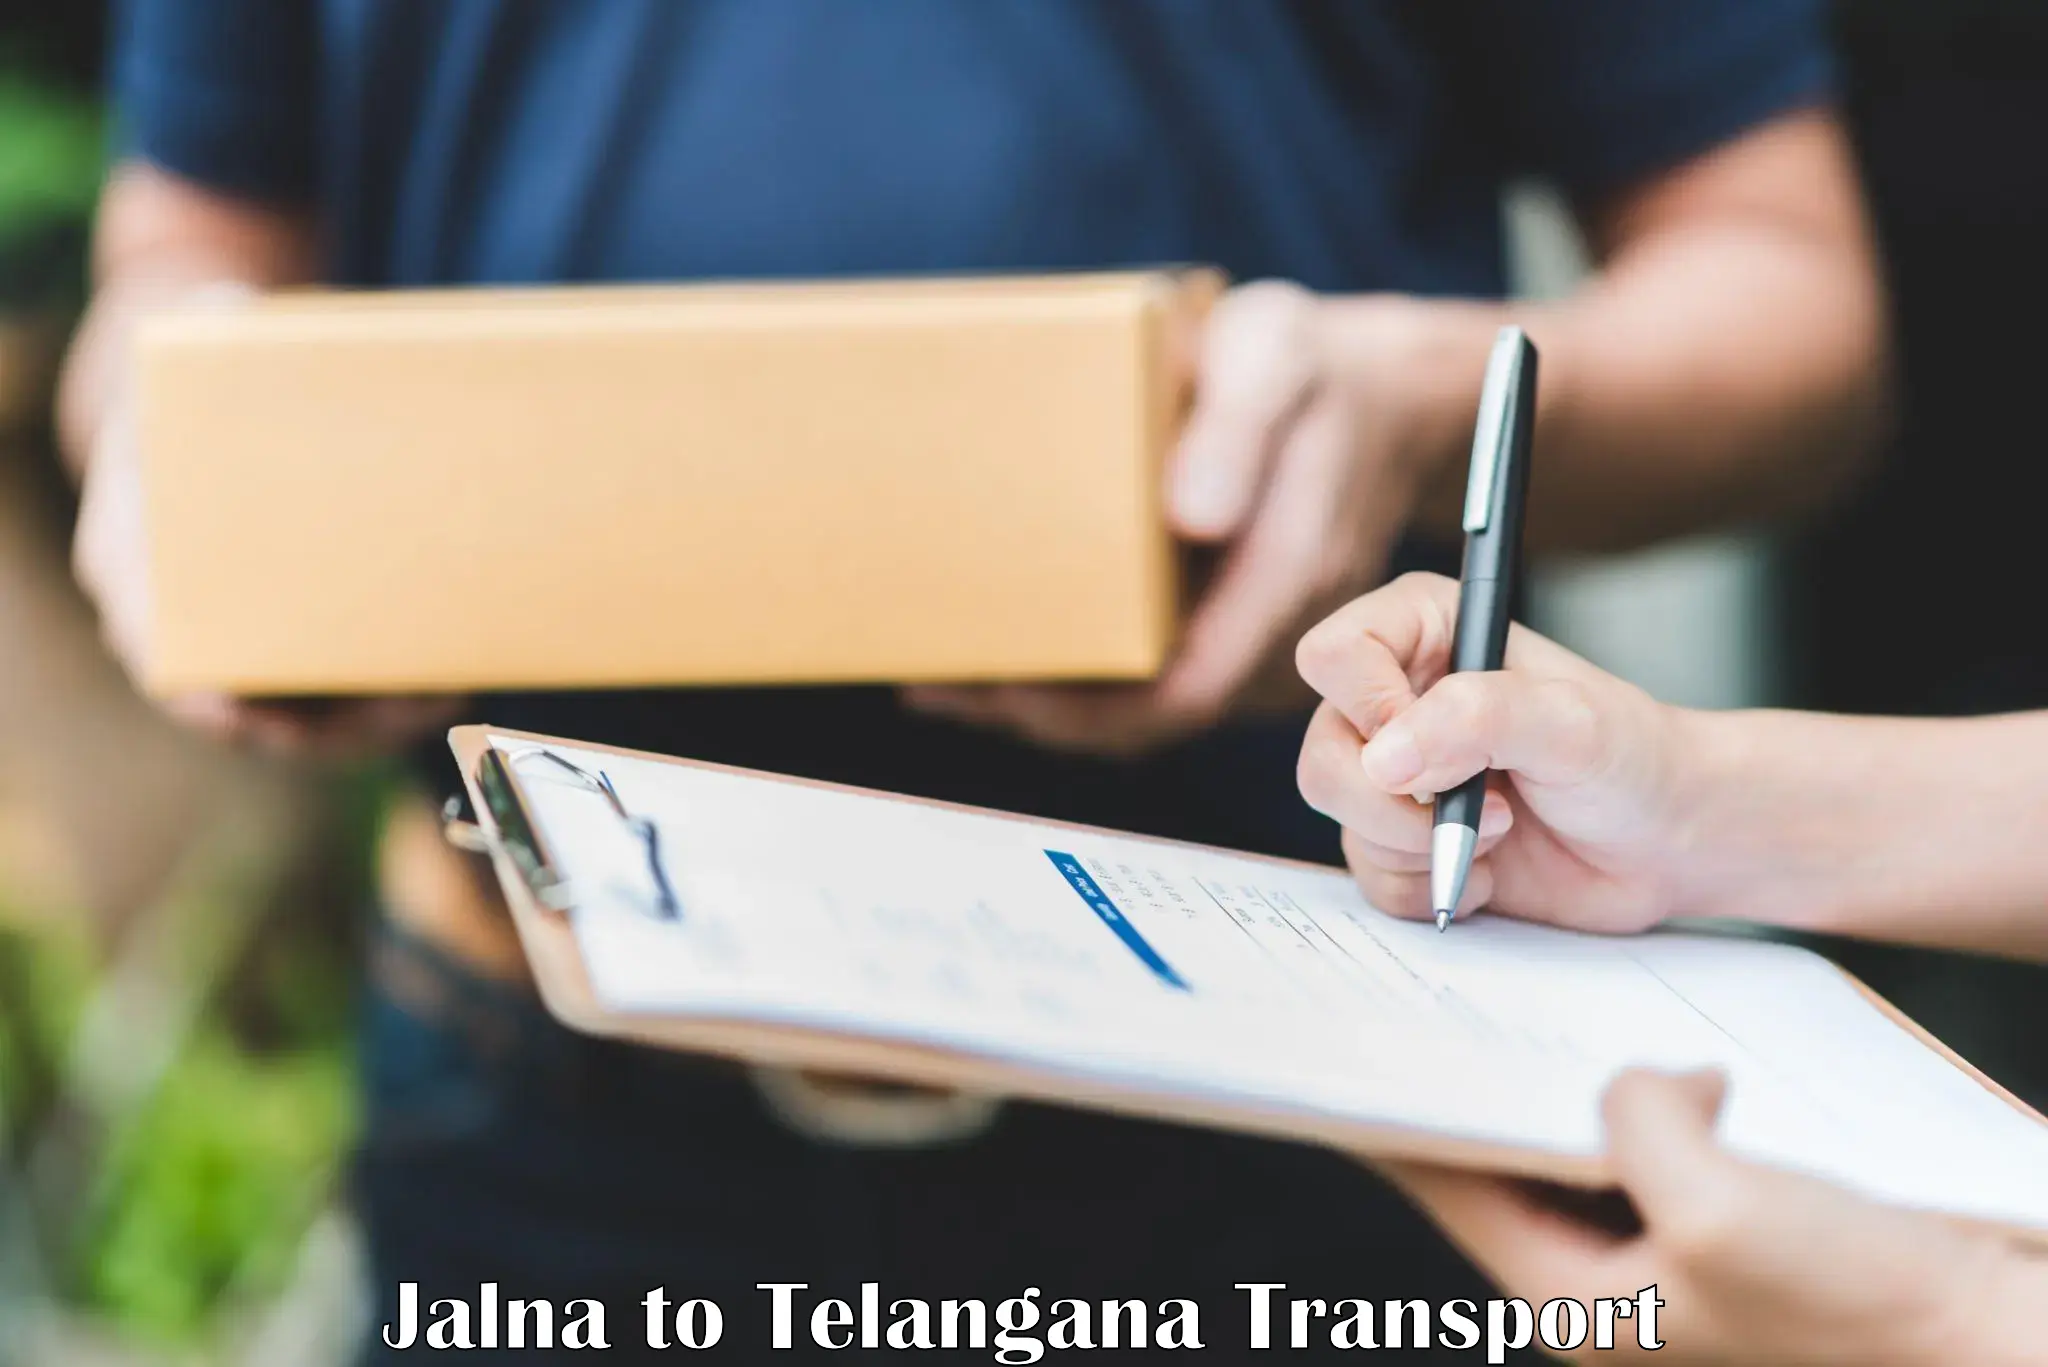 Commercial transport service Jalna to Yellandu